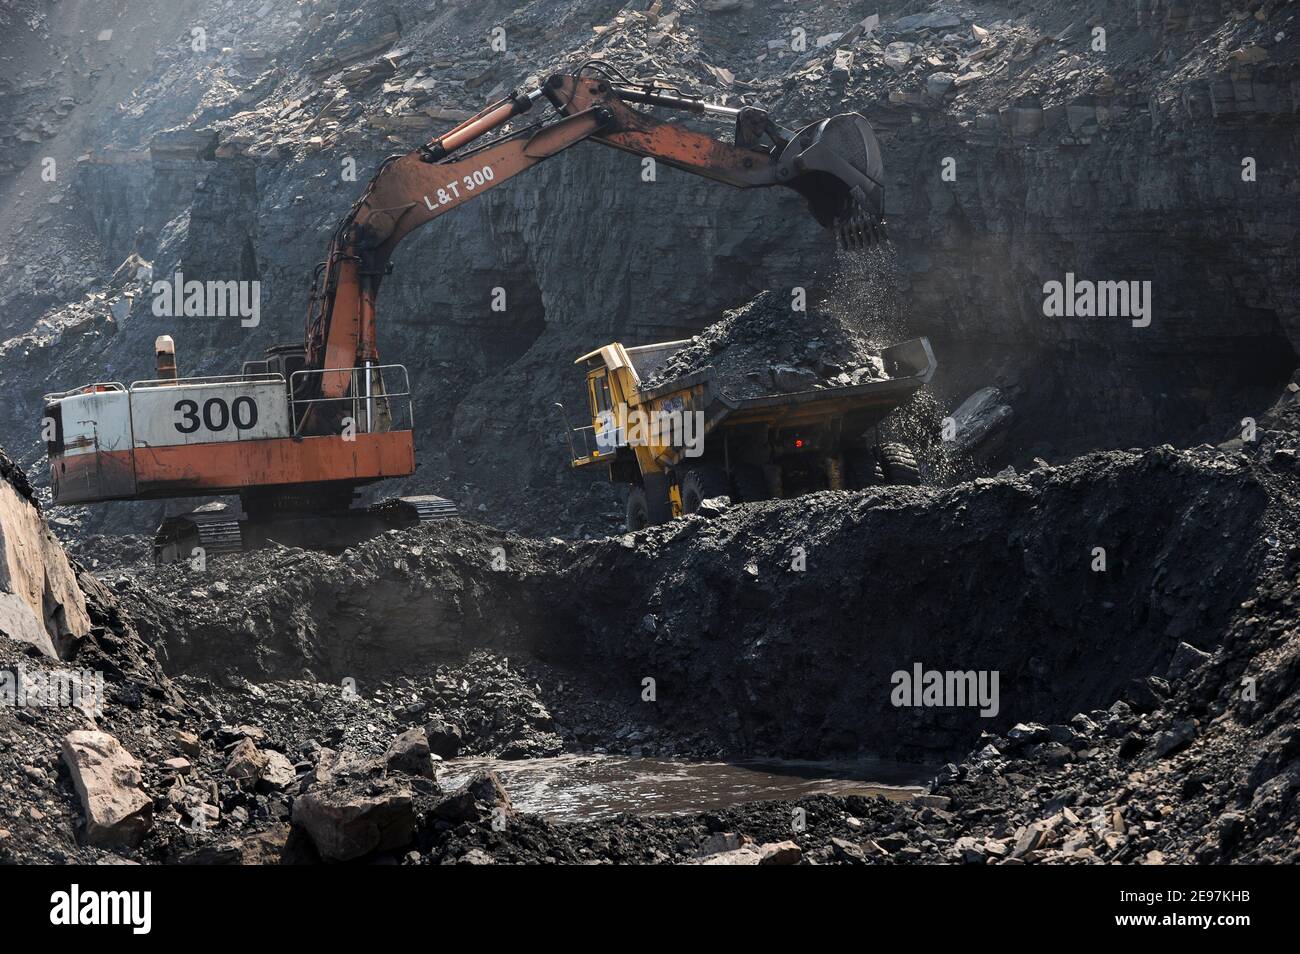 INDIA Dhanbad, estrazione di carbone a getto aperto di BCCL Ltd una società di CARBONE INDIA , L&T digger e grande dumper BEML / INDIEN Dhanbad , offener Kohle Tagebau von BCCL Ltd. Ein Tochterunternehmen von Coal India Foto Stock